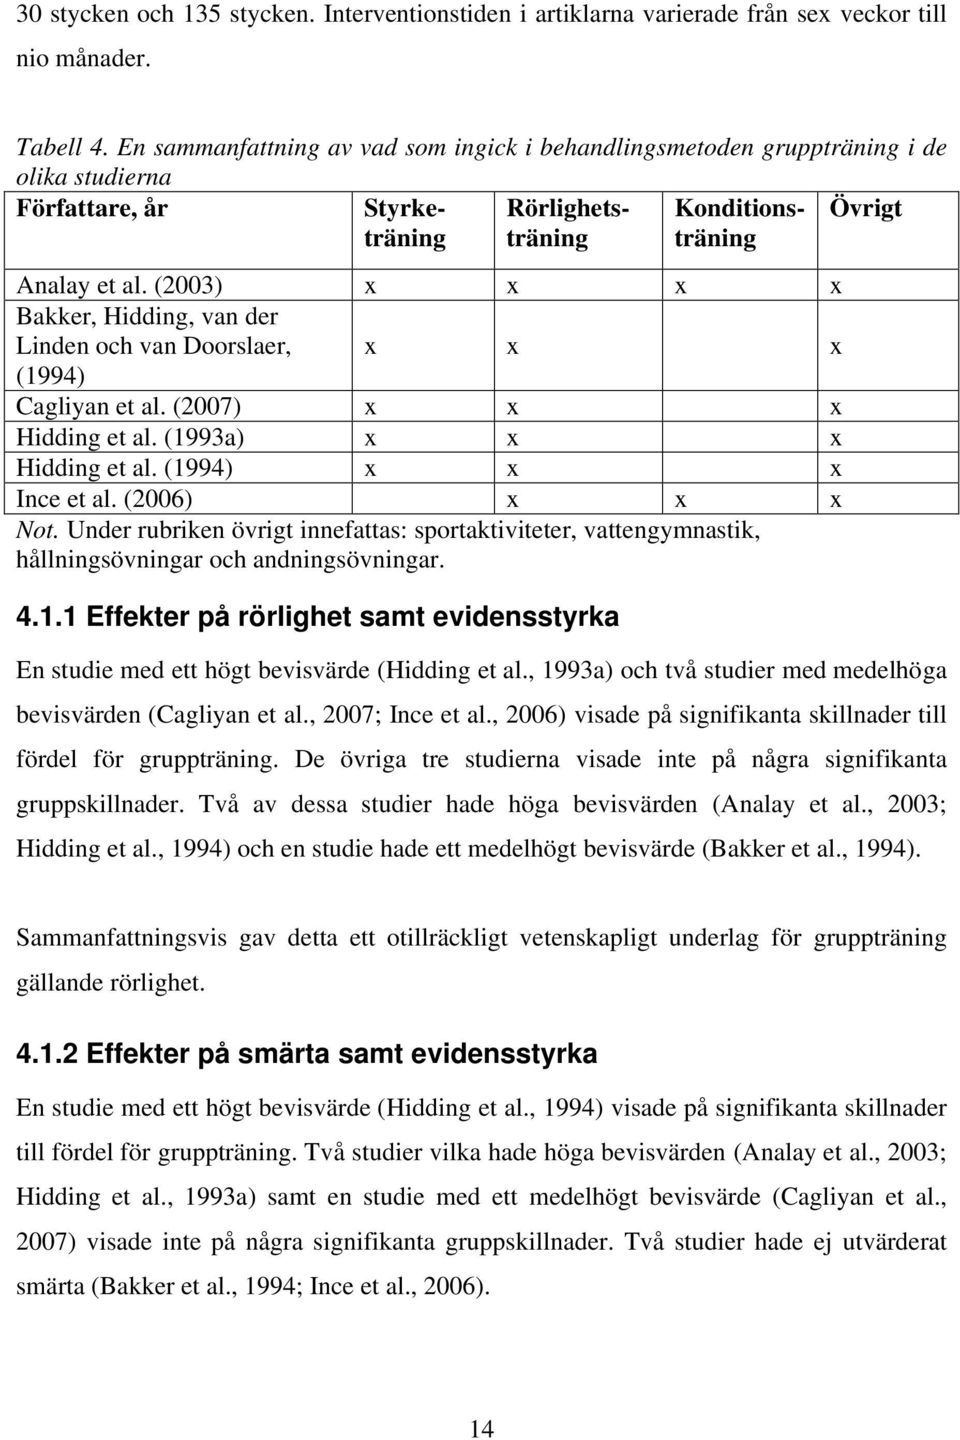 (2003) x x x x Bakker, Hidding, van der Linden och van Doorslaer, x x x (1994) Cagliyan et al. (2007) x x x Hidding et al. (1993a) x x x Hidding et al. (1994) x x x Ince et al. (2006) x x x Not.